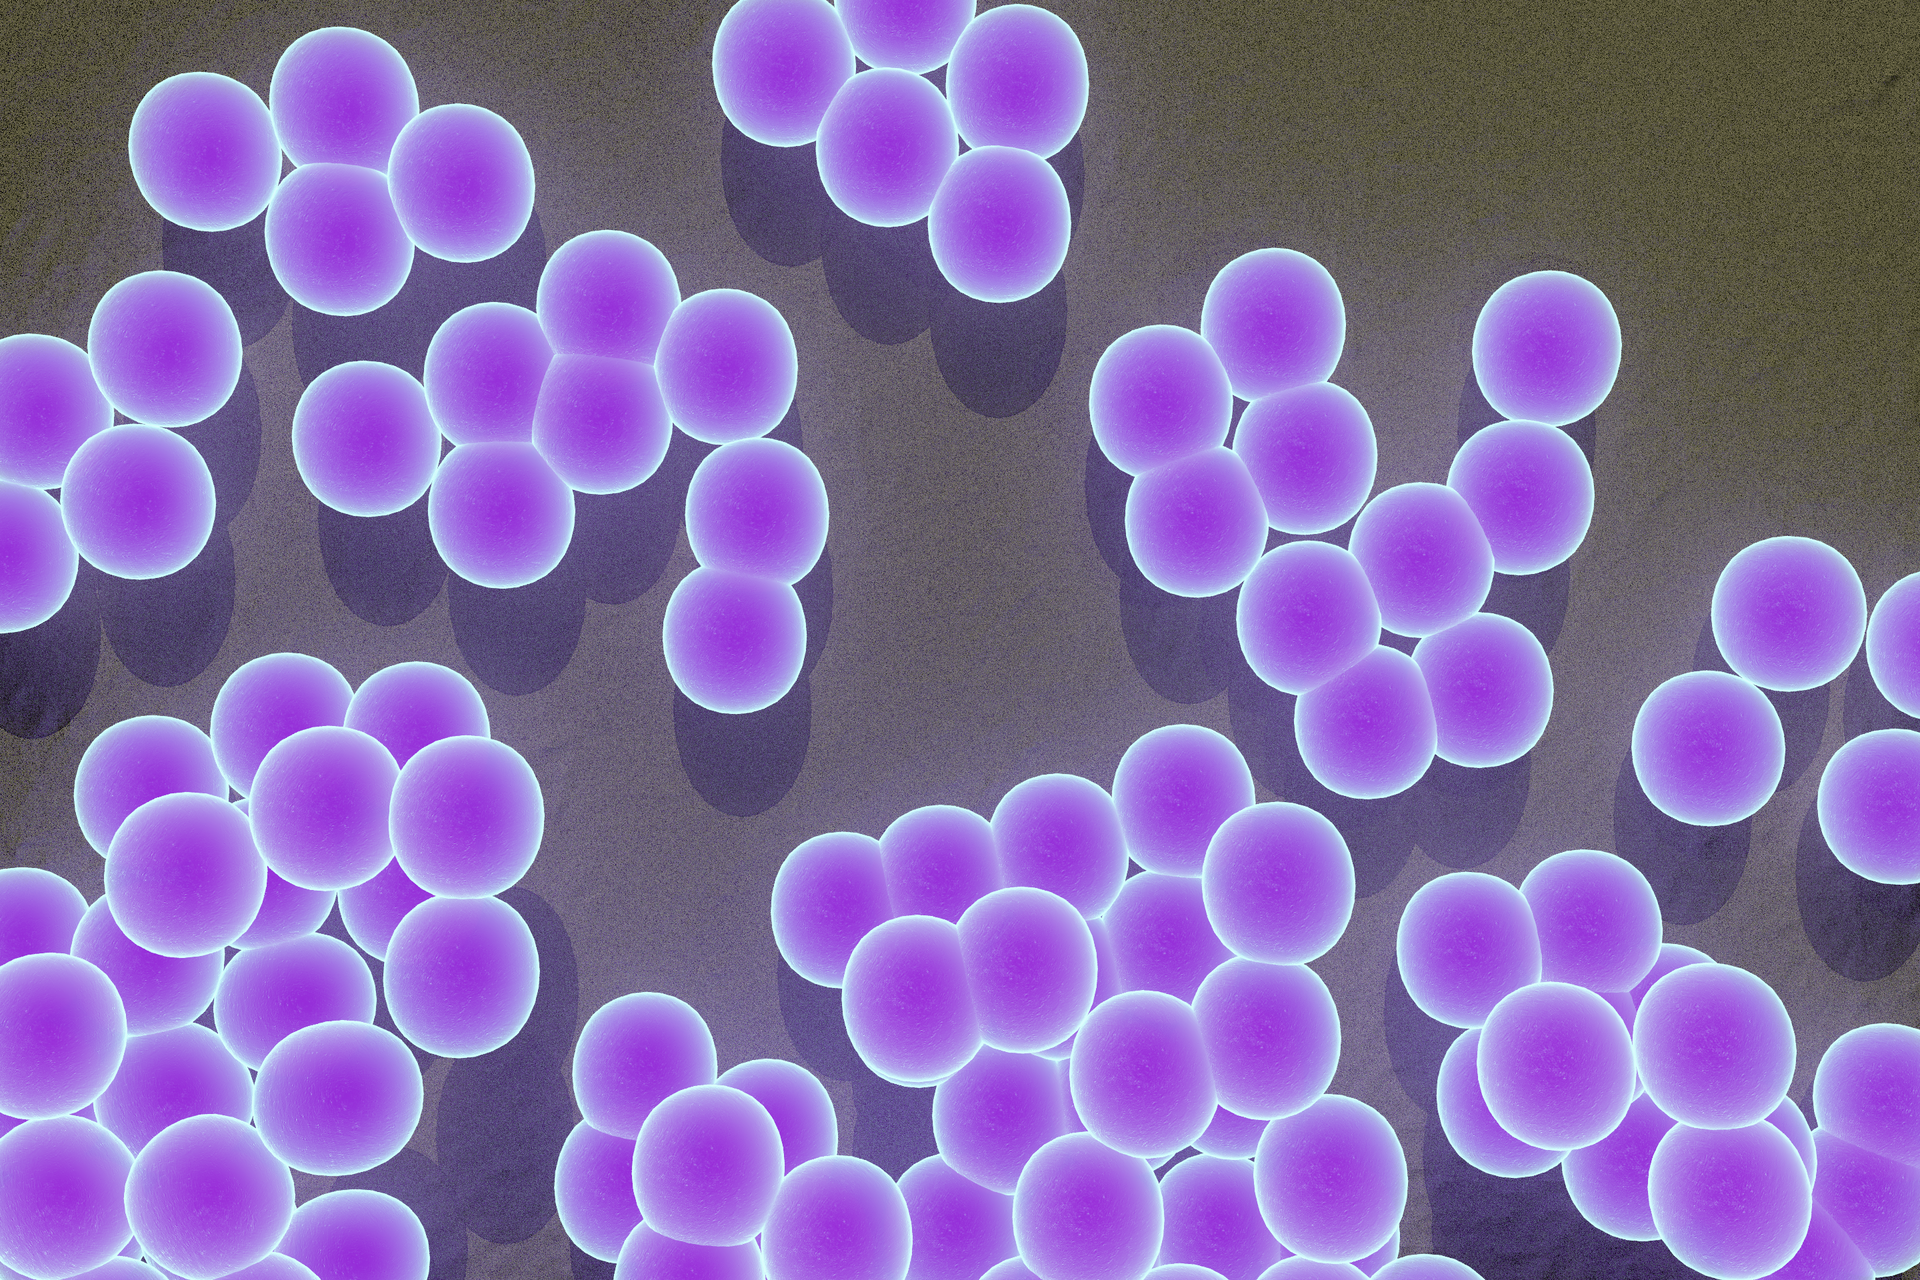 Ilustracja przedstawia około 40 kulistych bakterii skupionych w 3 "grudki".